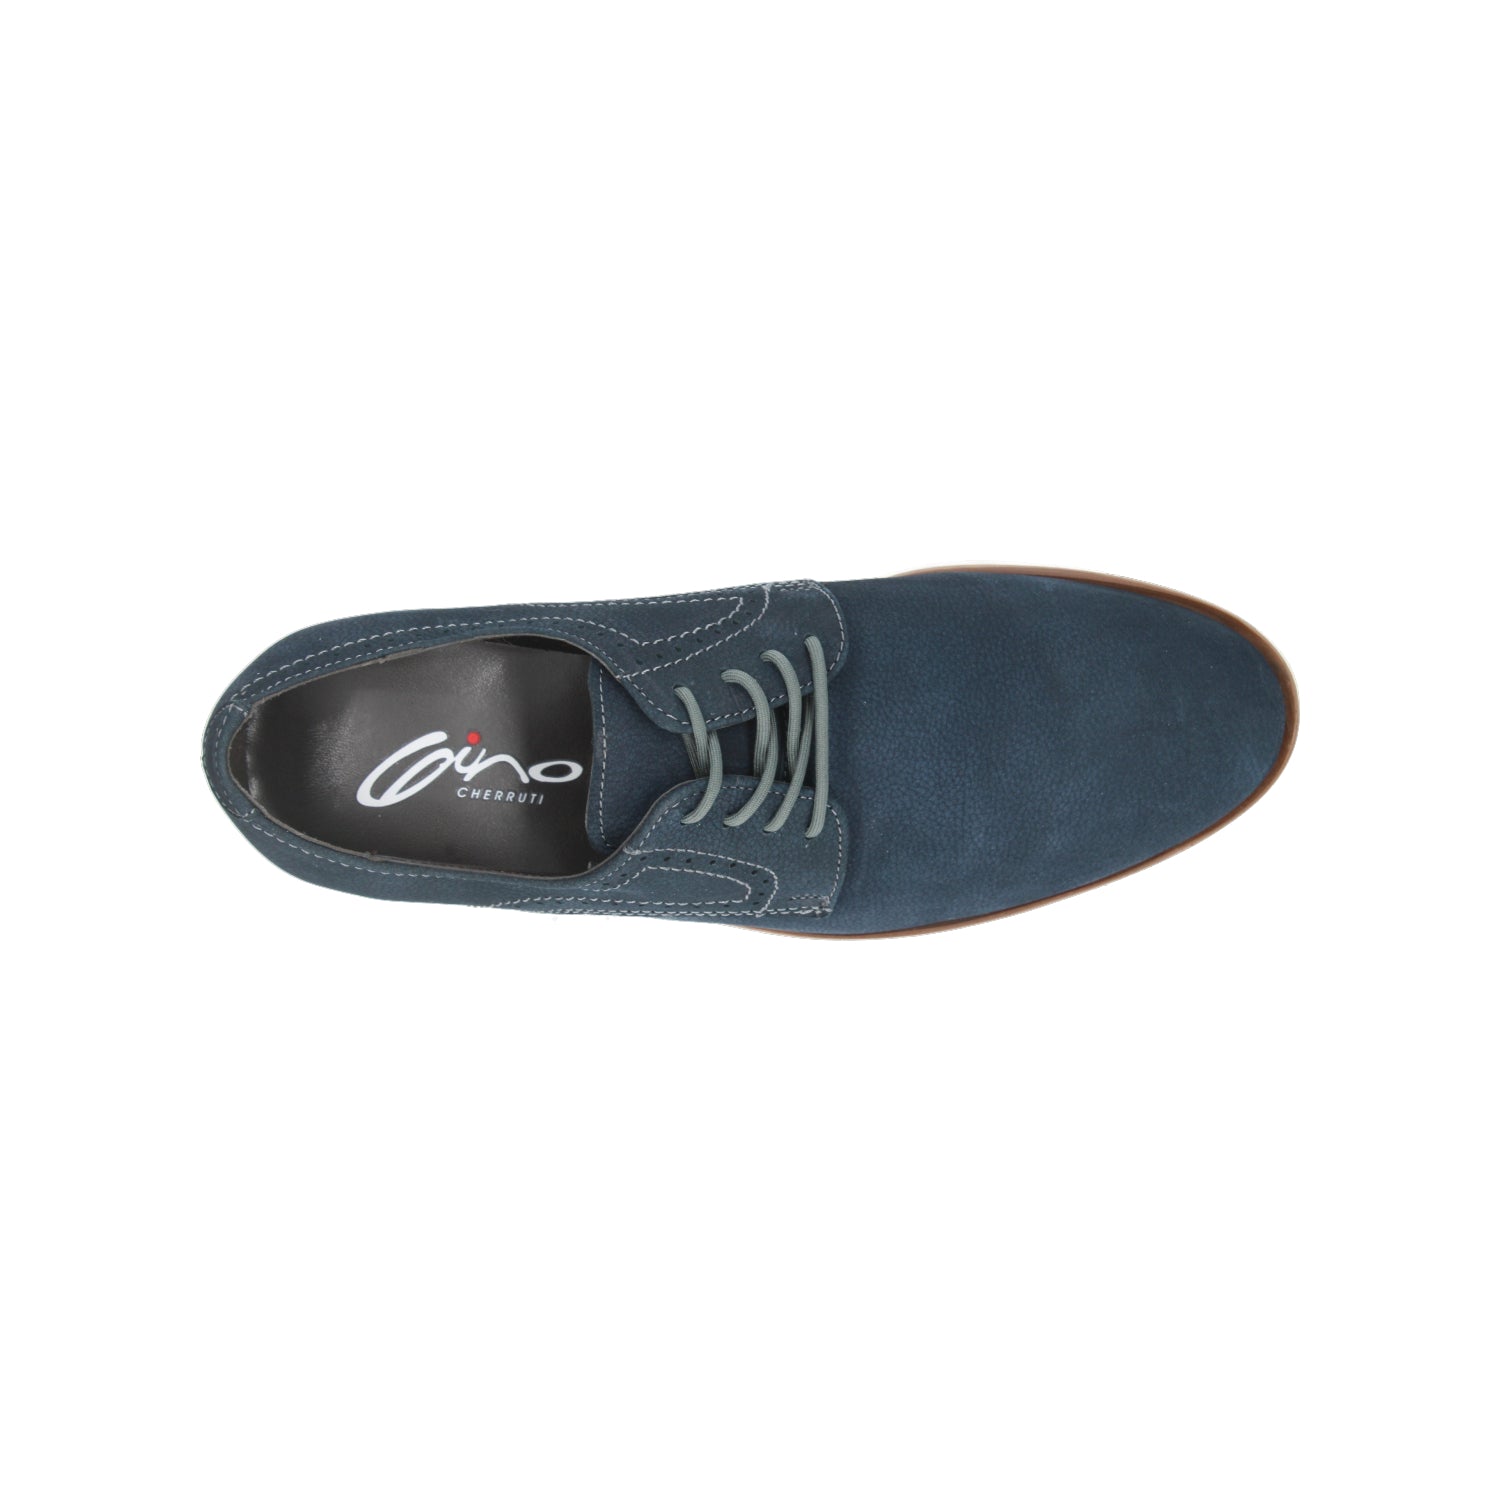 Zapato Casual Gino cherruti Azul para Hombre [GCH331]